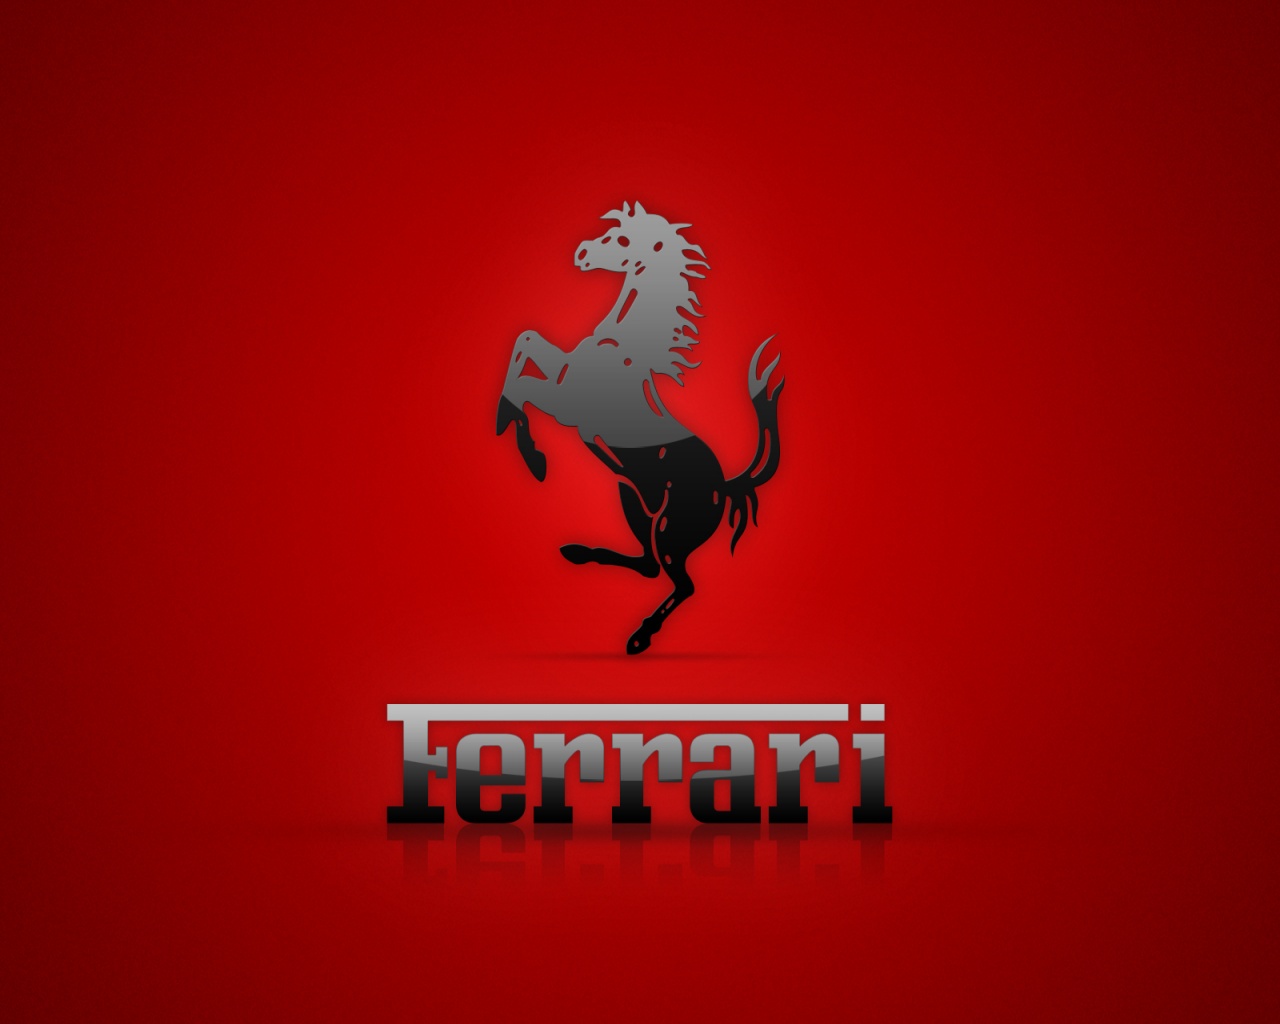 Ferrari Logo Wallpaper - WallpaperSafari